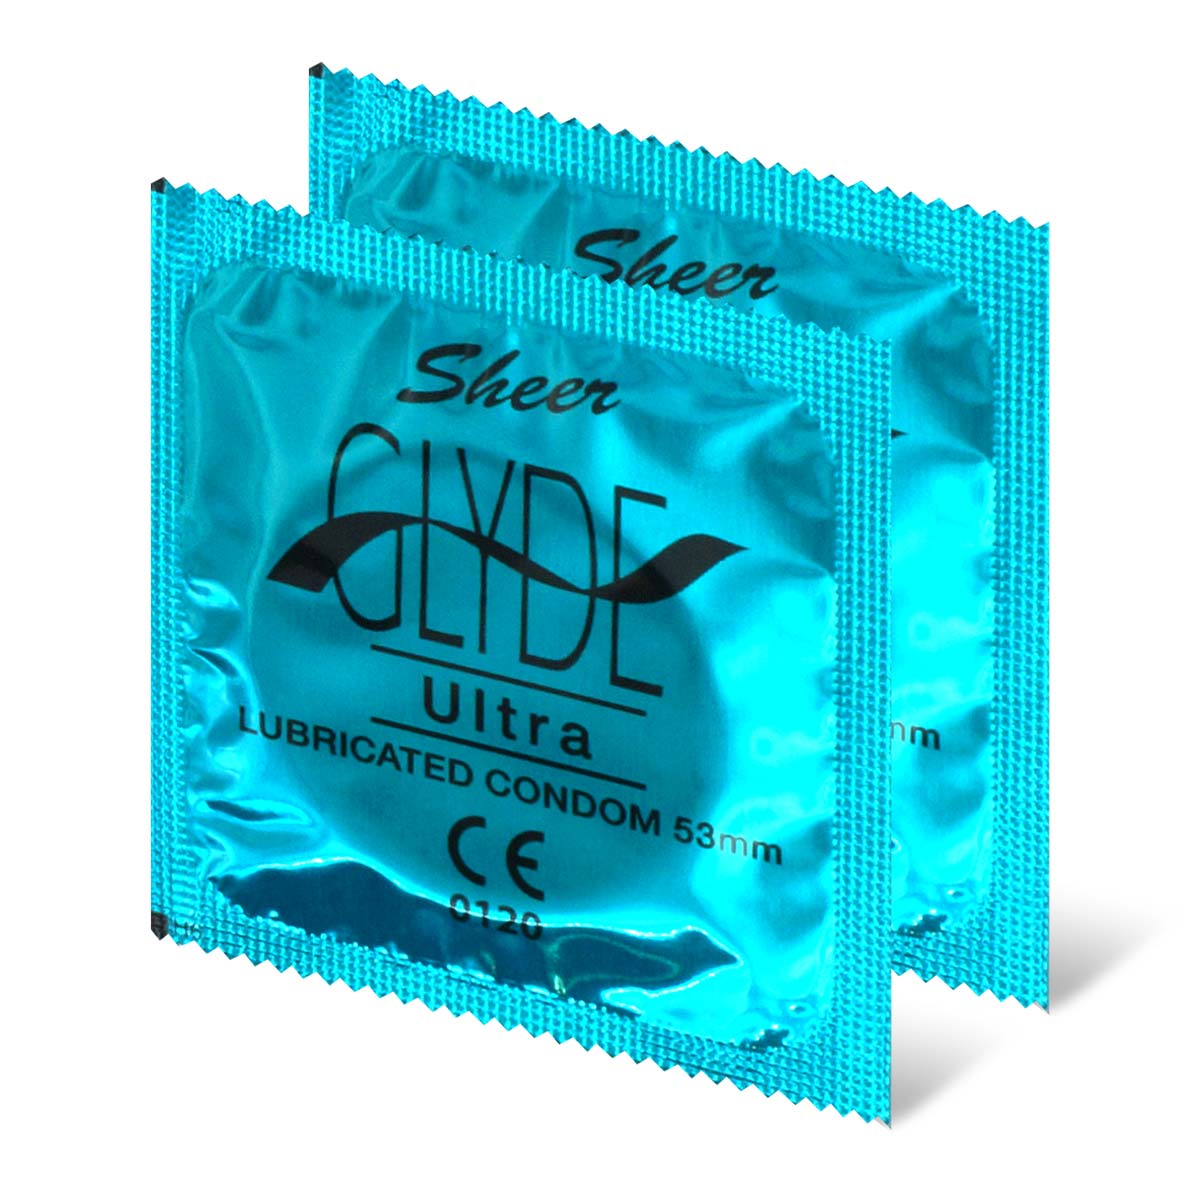 Glyde 格蕾迪 素食主义安全套 超薄 2 片装 乳胶安全套-p_1